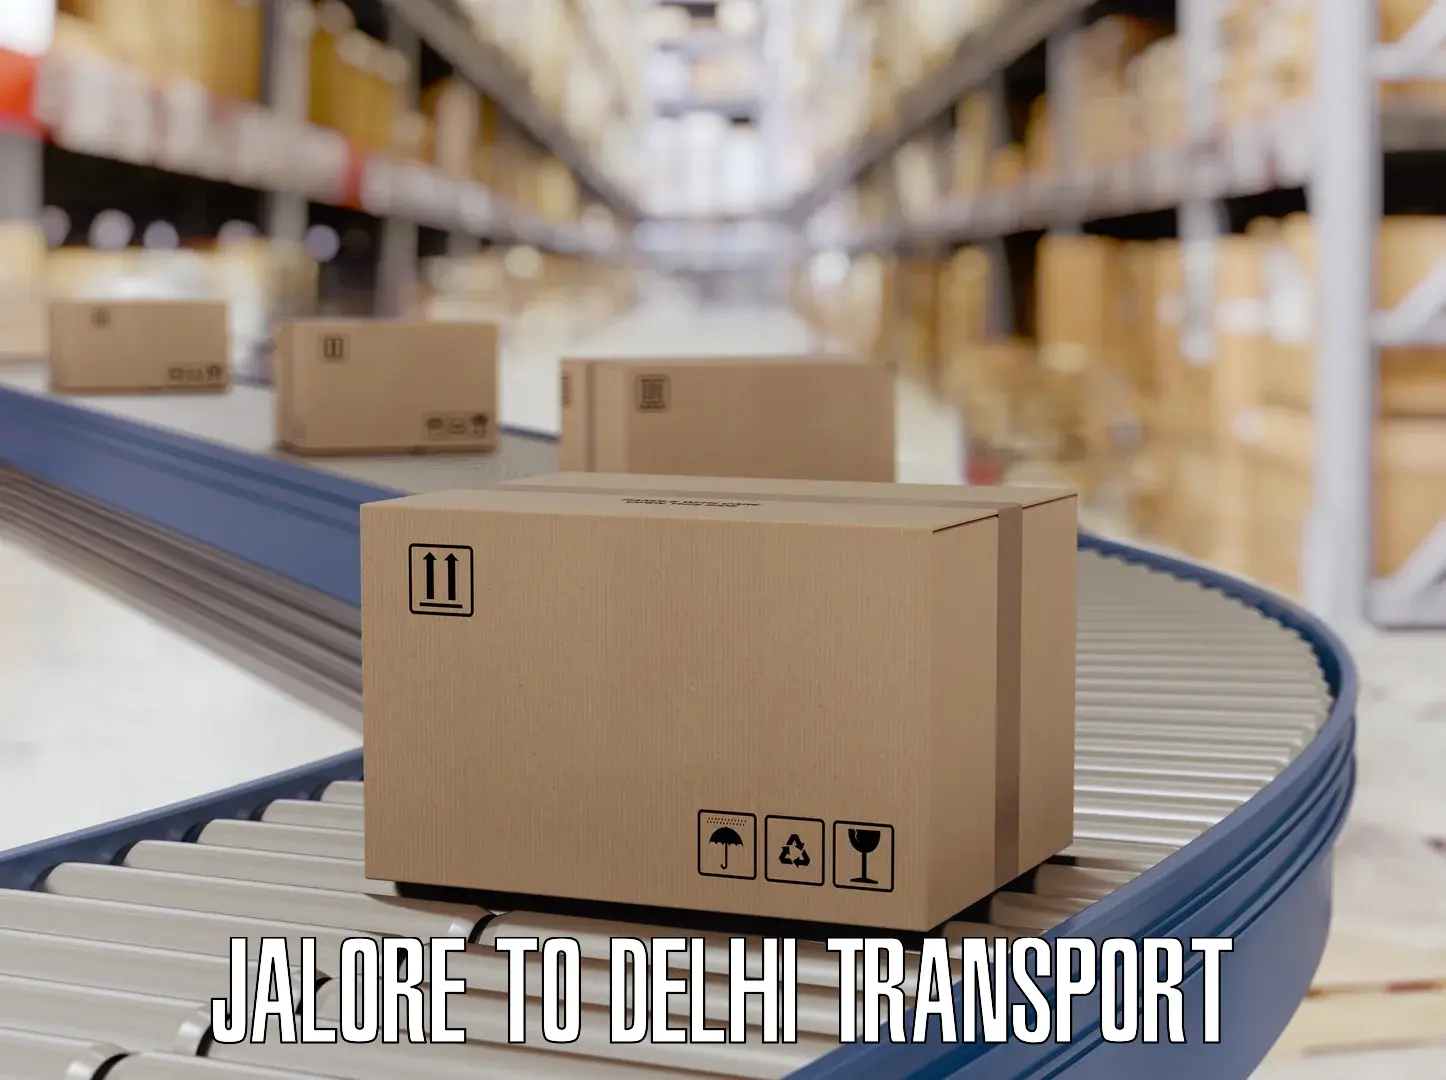 Nearest transport service Jalore to NCR